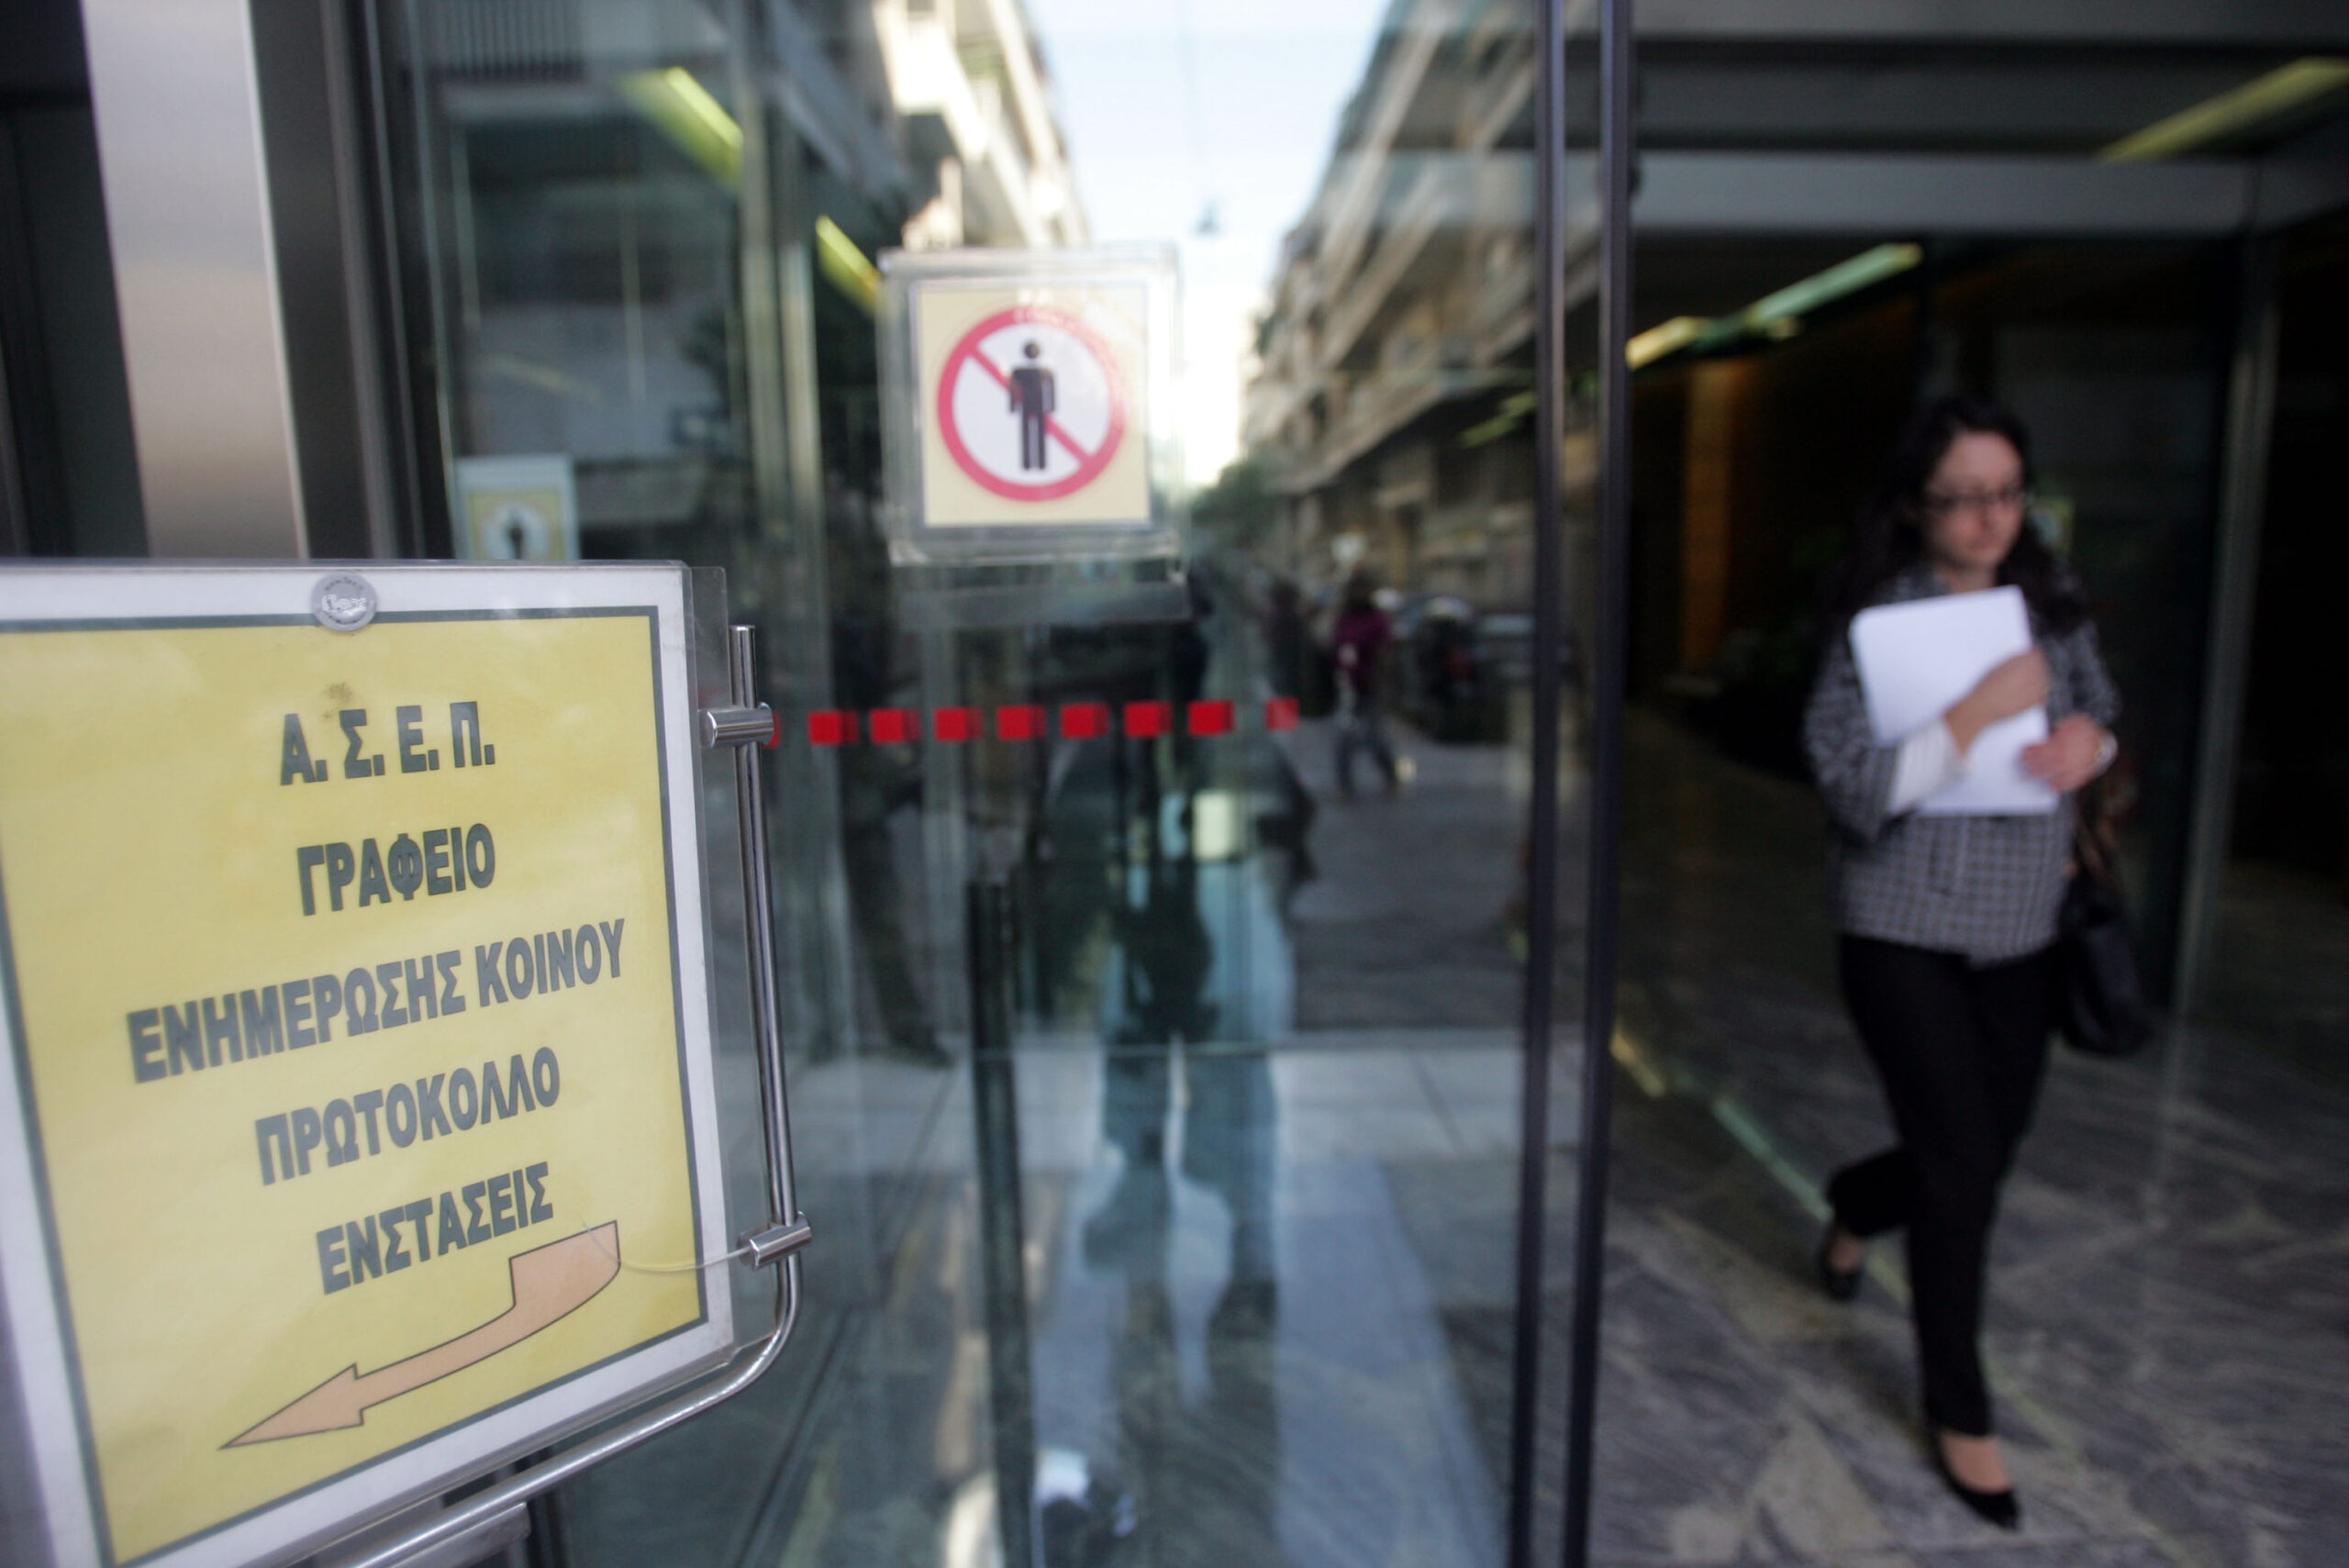 ΣΥΡΙΖΑ: “Συνεχείς αλλαγές νομοθεσίας για να παρακαμφθεί το ΑΣΕΠ”